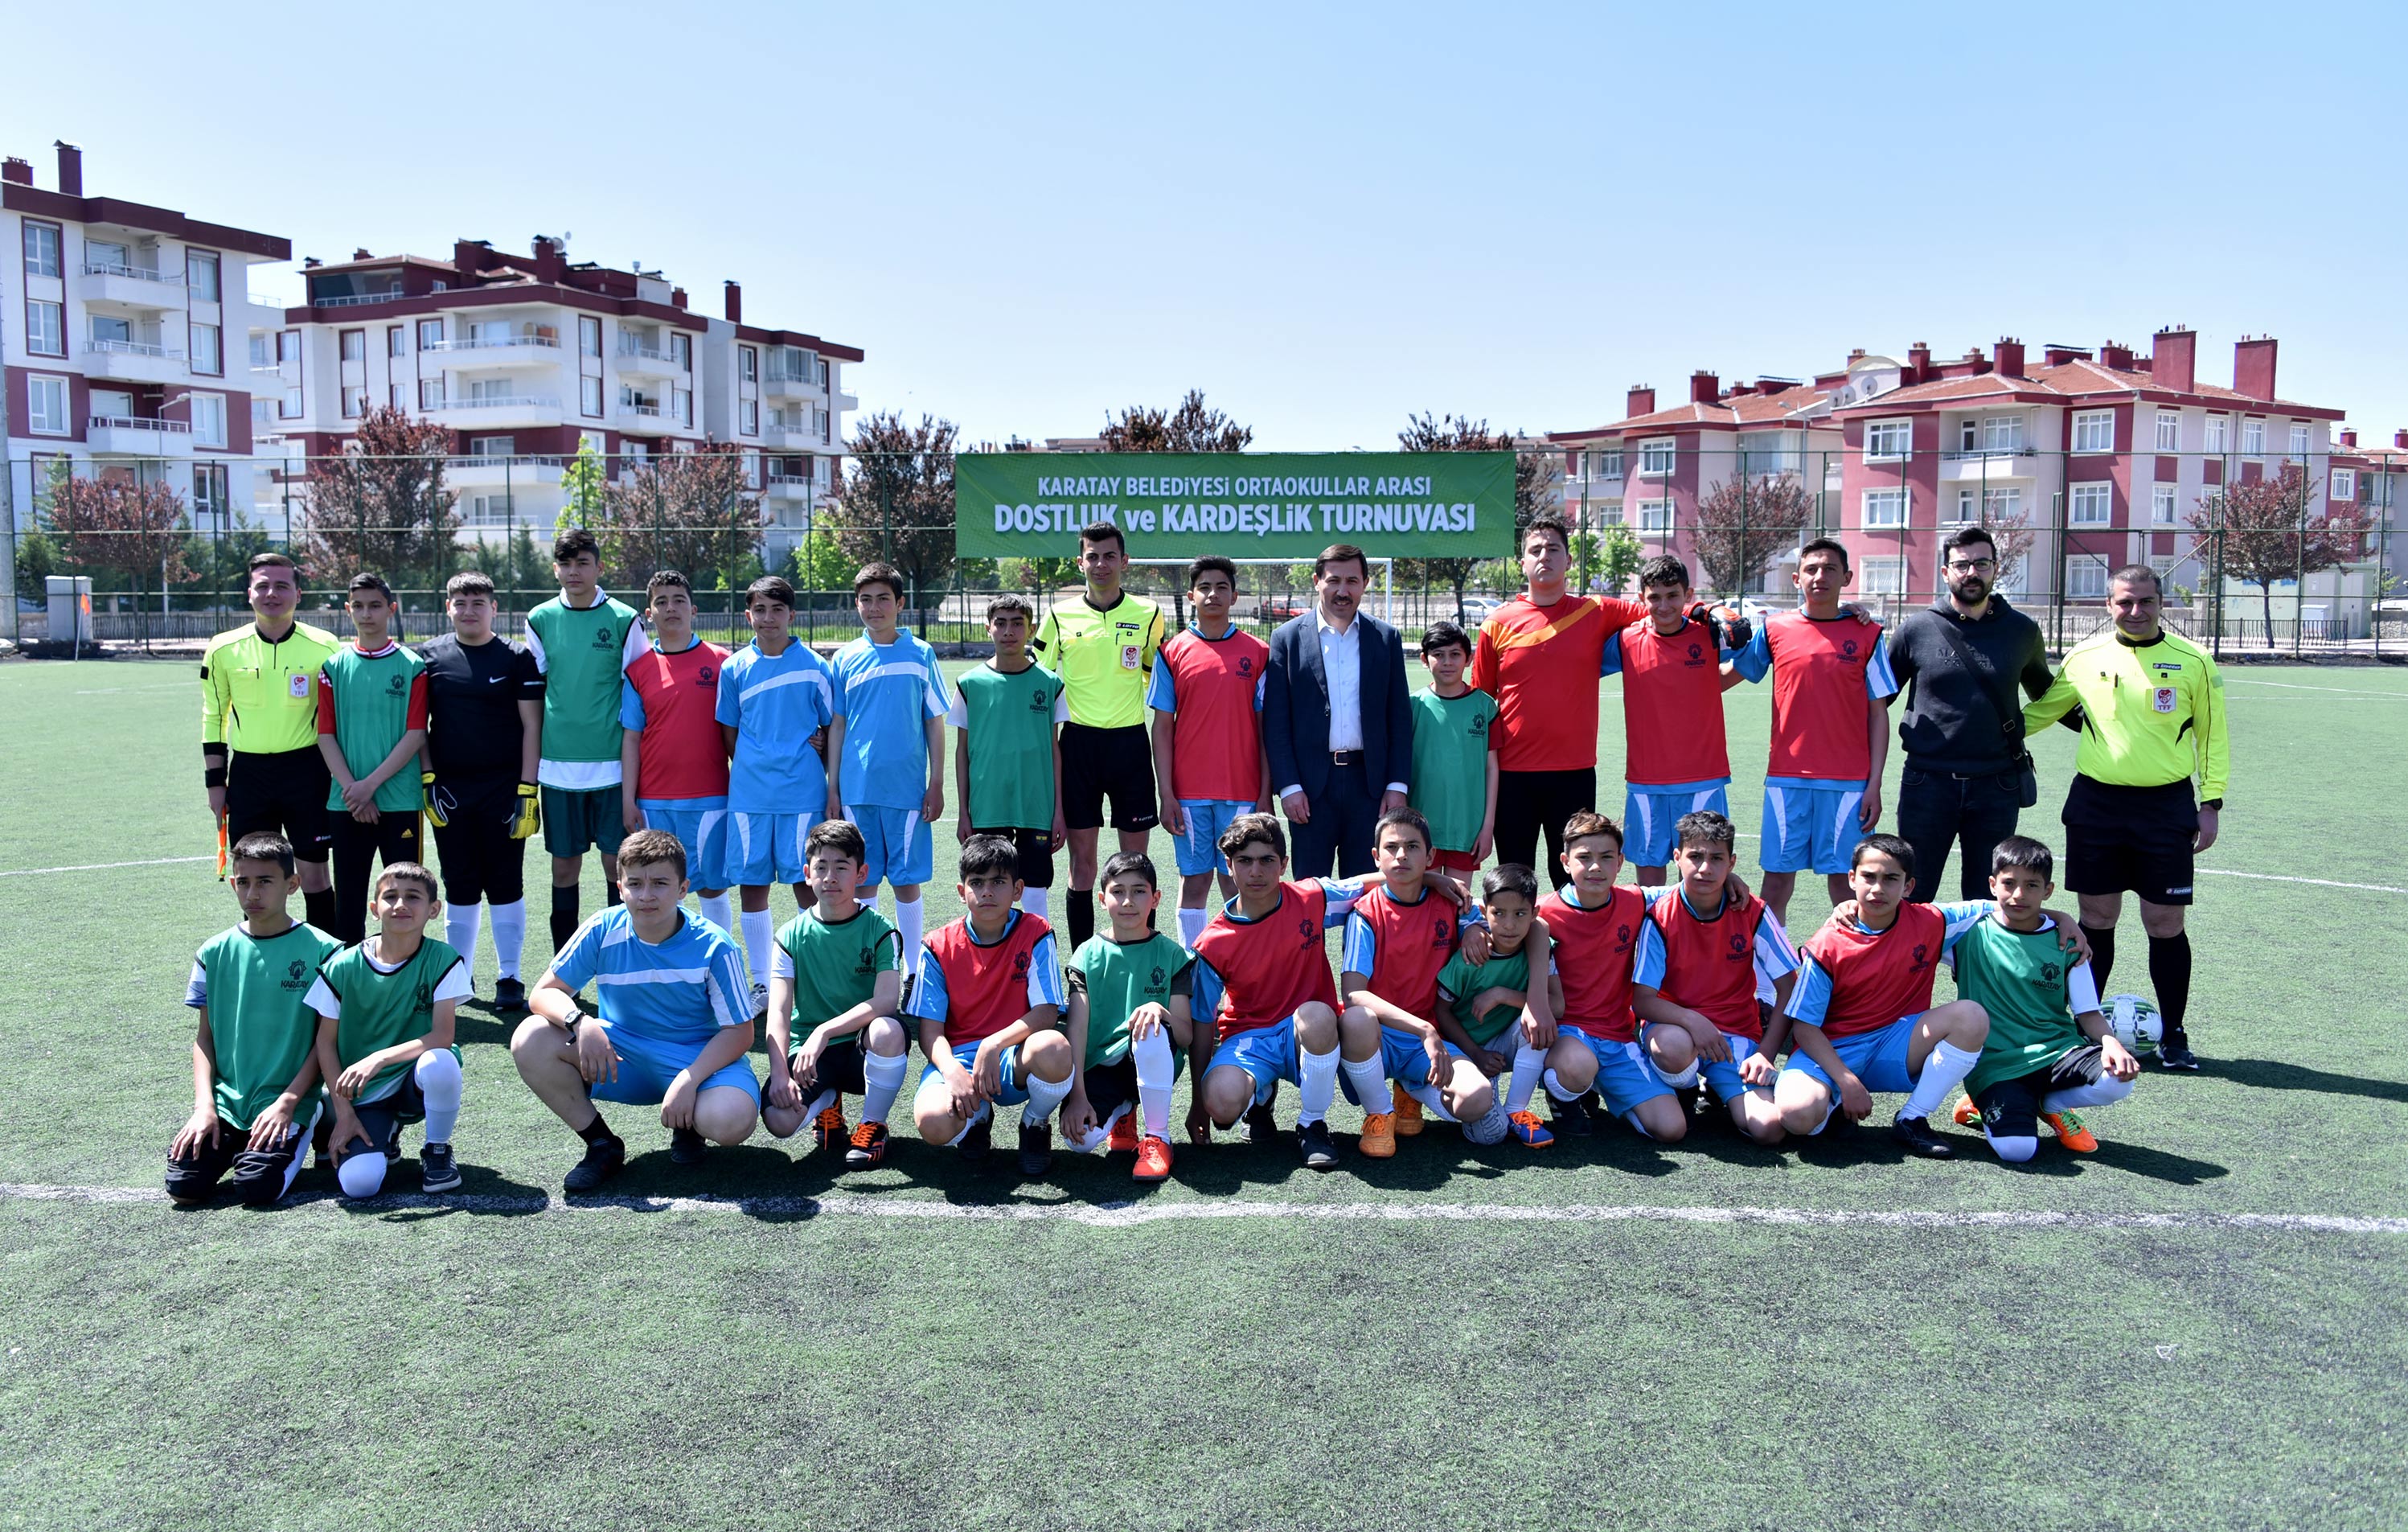 Karatay’da “Ortaokullar arası dostluk ve kardeşlik futbol turnuvası”